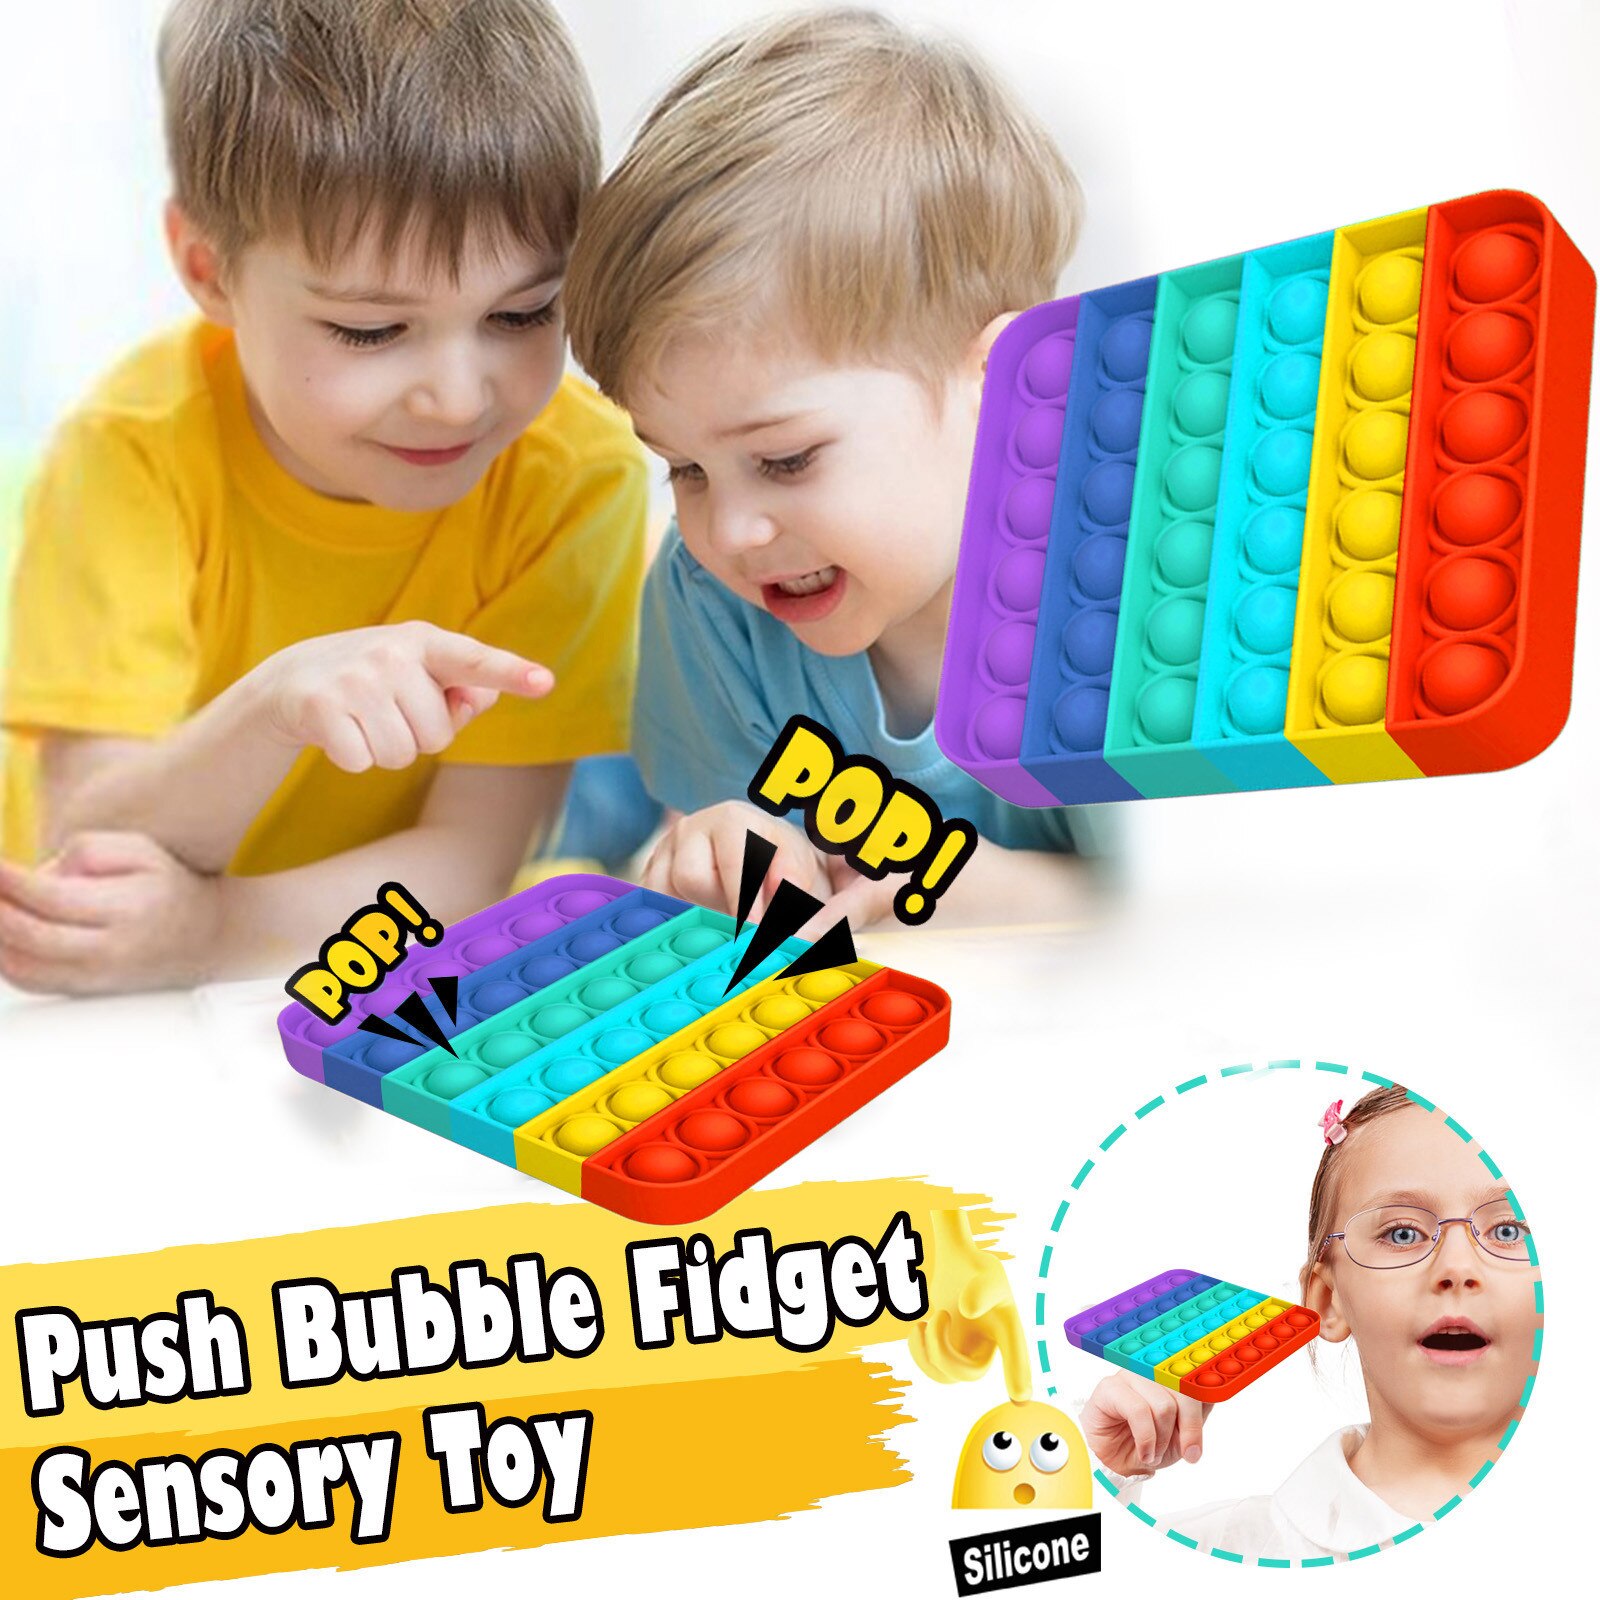 Volwassen Kids Funny Antistress Speelgoed Push Bubble Fidget Zintuiglijke Speelgoed Autisme Speciale Behoeften Stress Reliever Speelgoed Squishy Aнтистресс